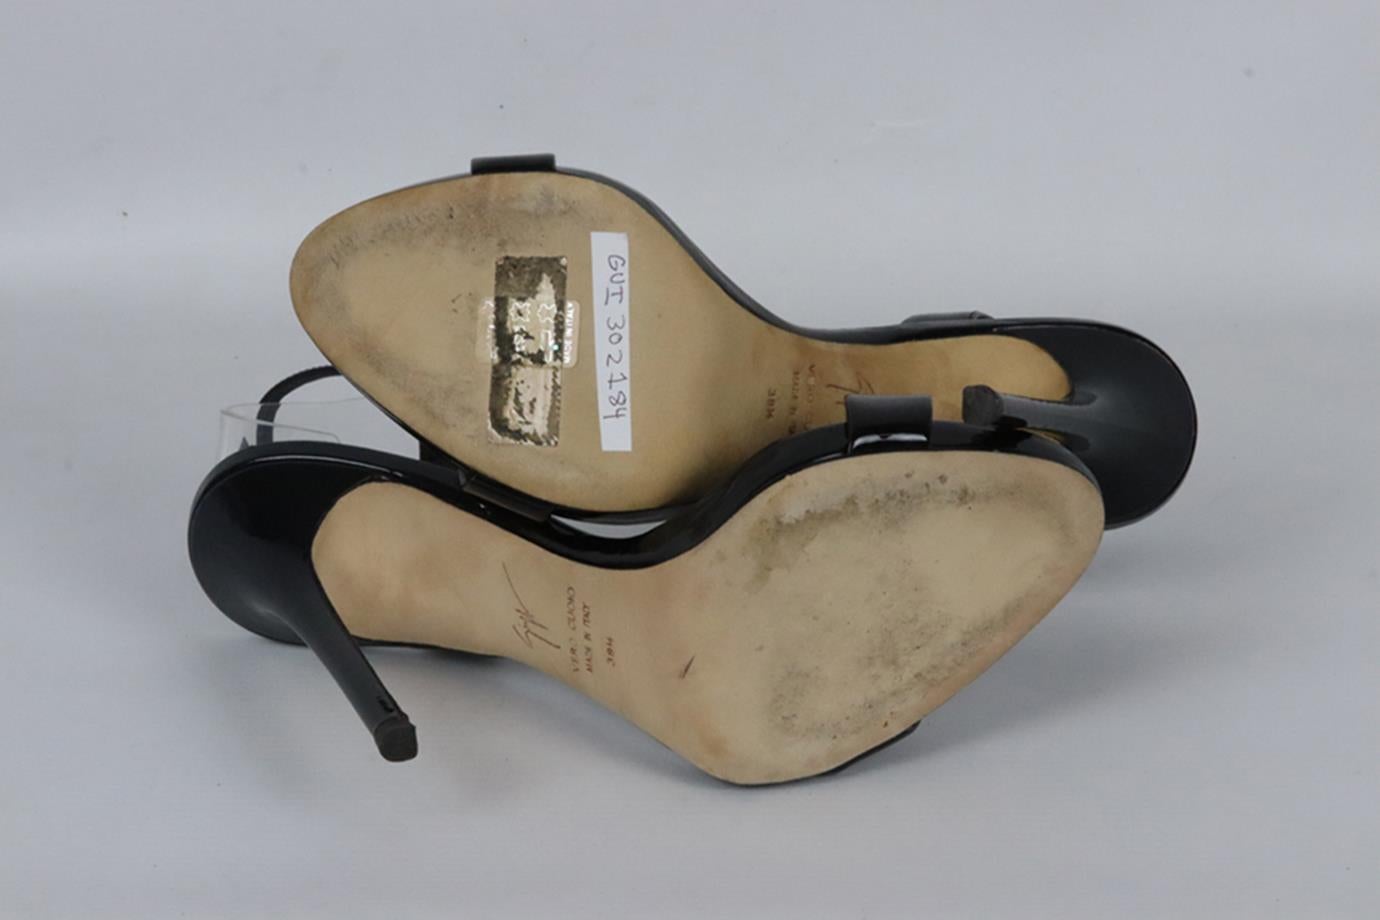 Women's Giuseppe Zanotti Patent Leather Sandals Eu 38.5 Uk 5.5 Us 8.5